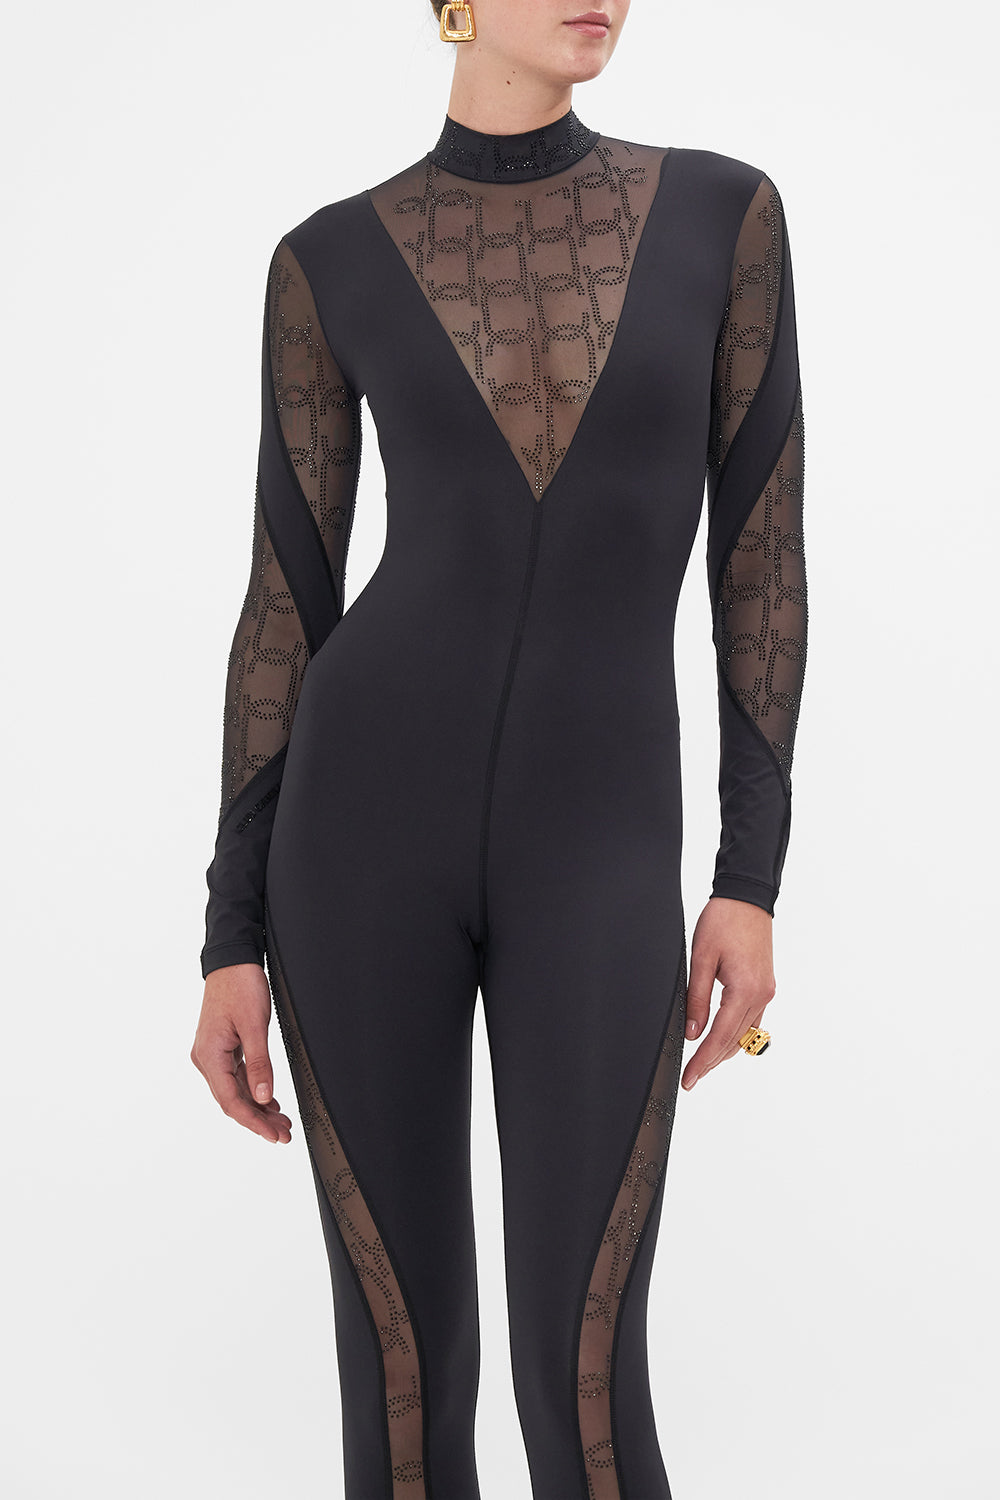 CAMILLA black mesh catsuit 